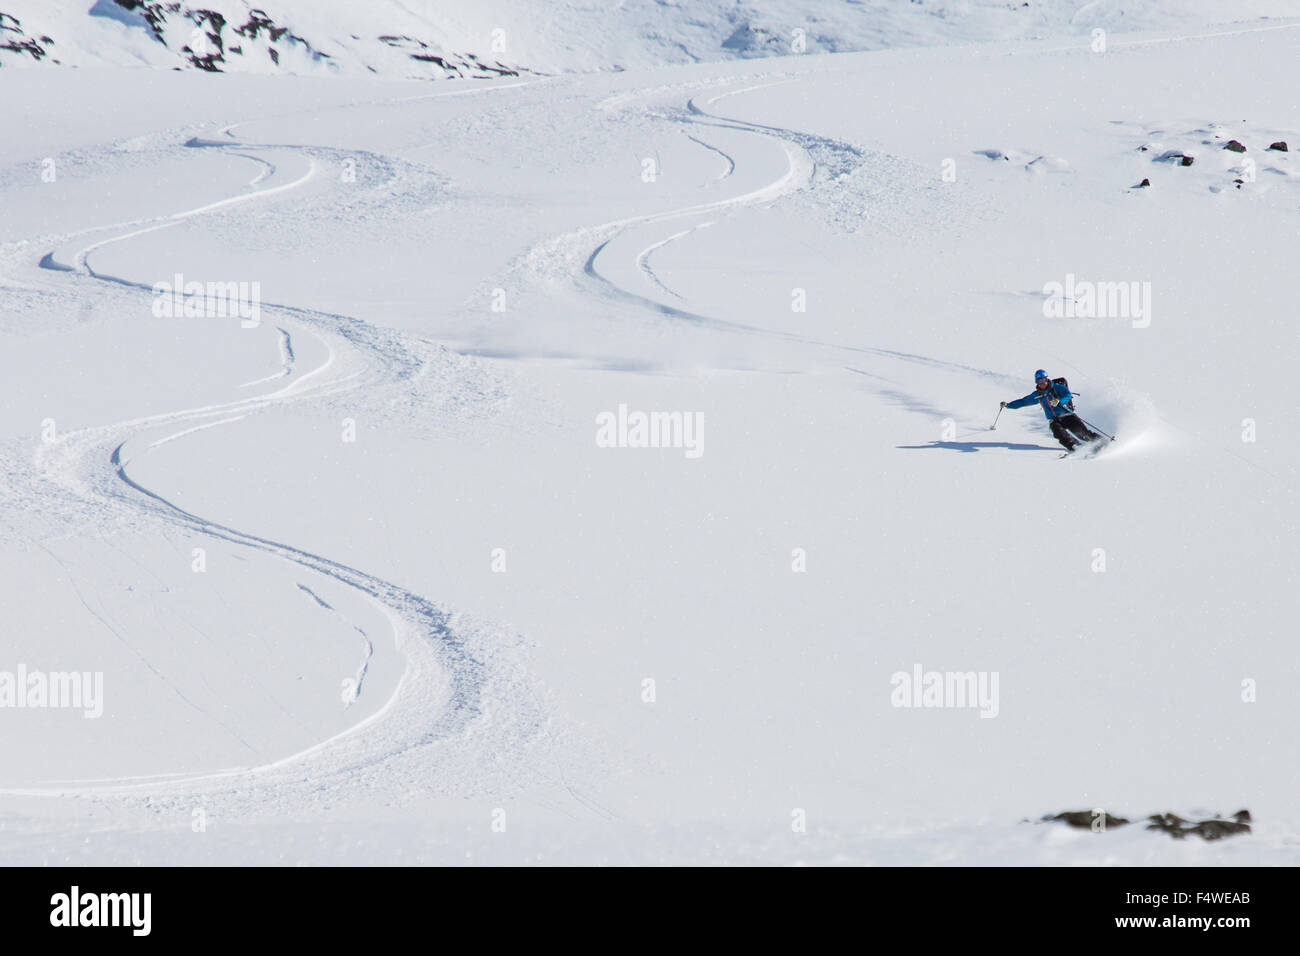 Man ski mountaineering Stock Photo